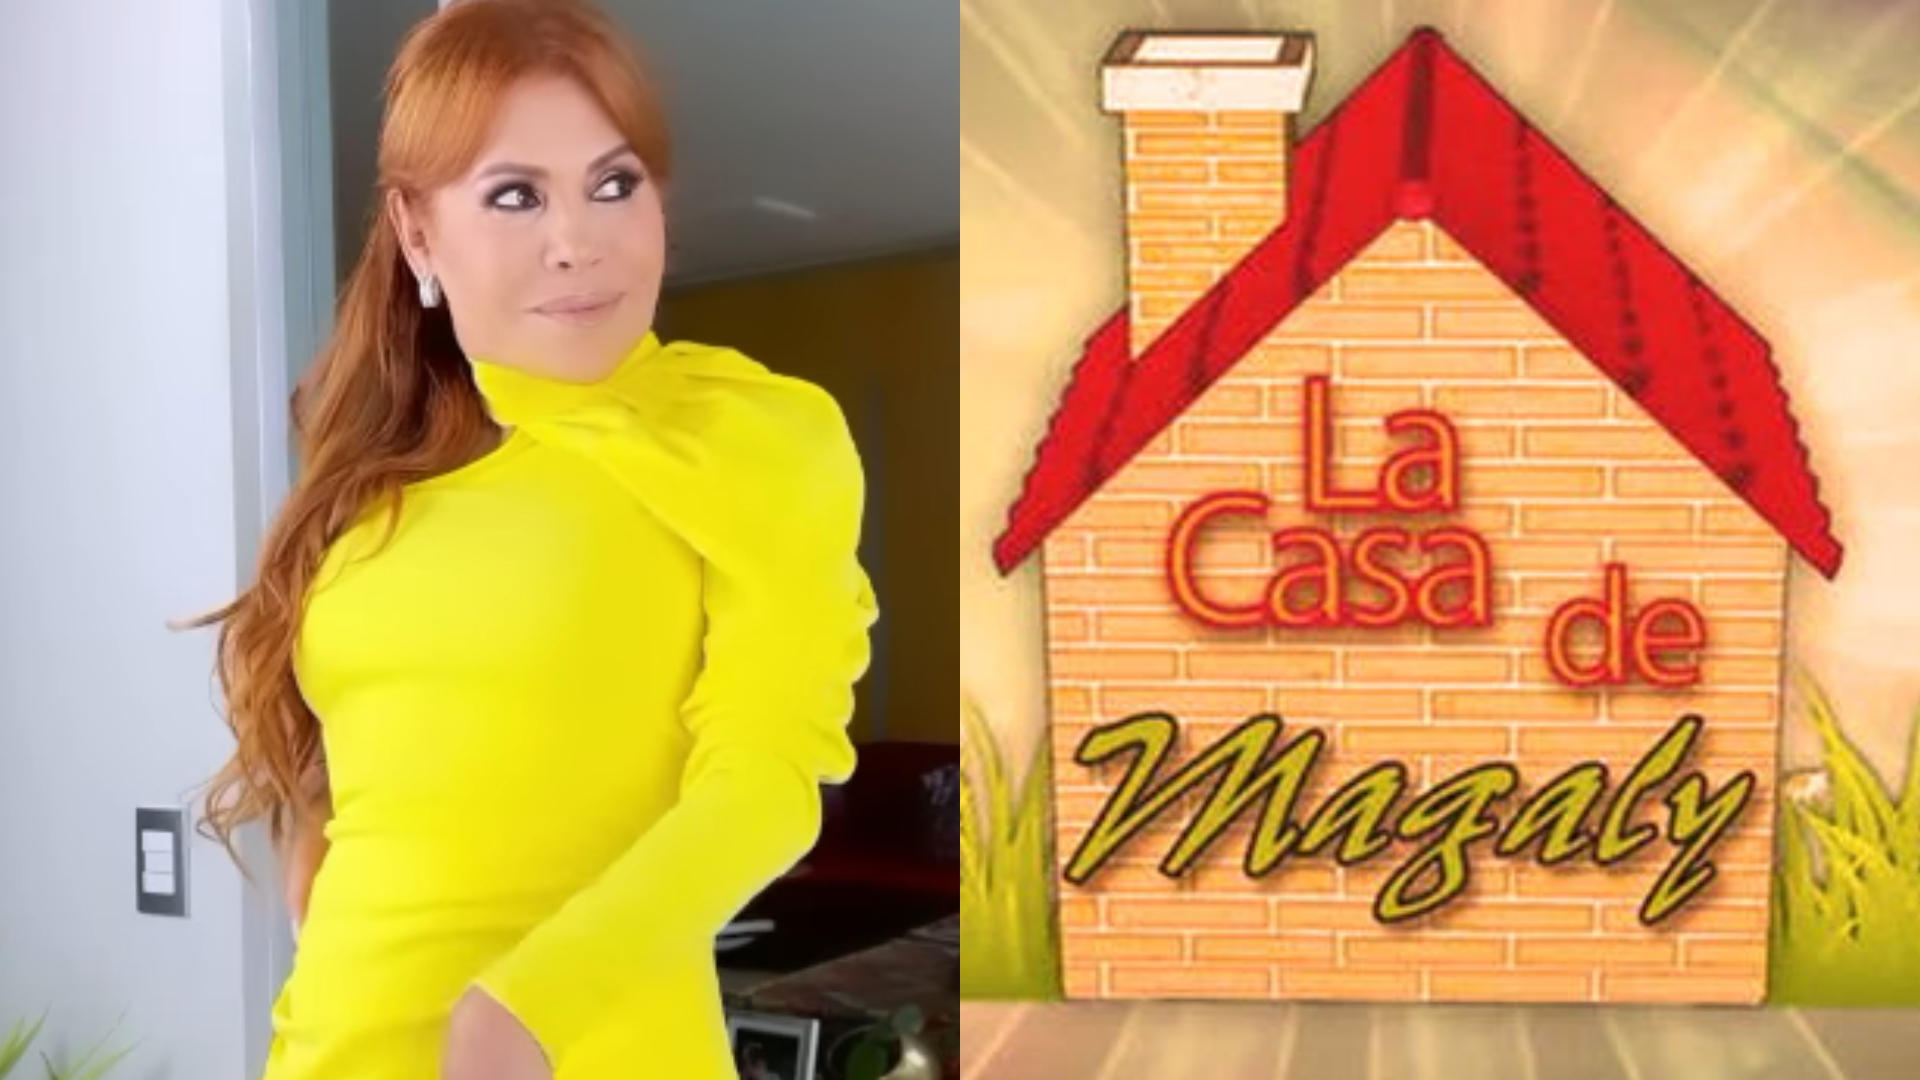 Magaly Medina talks about La Casa de Magaly.